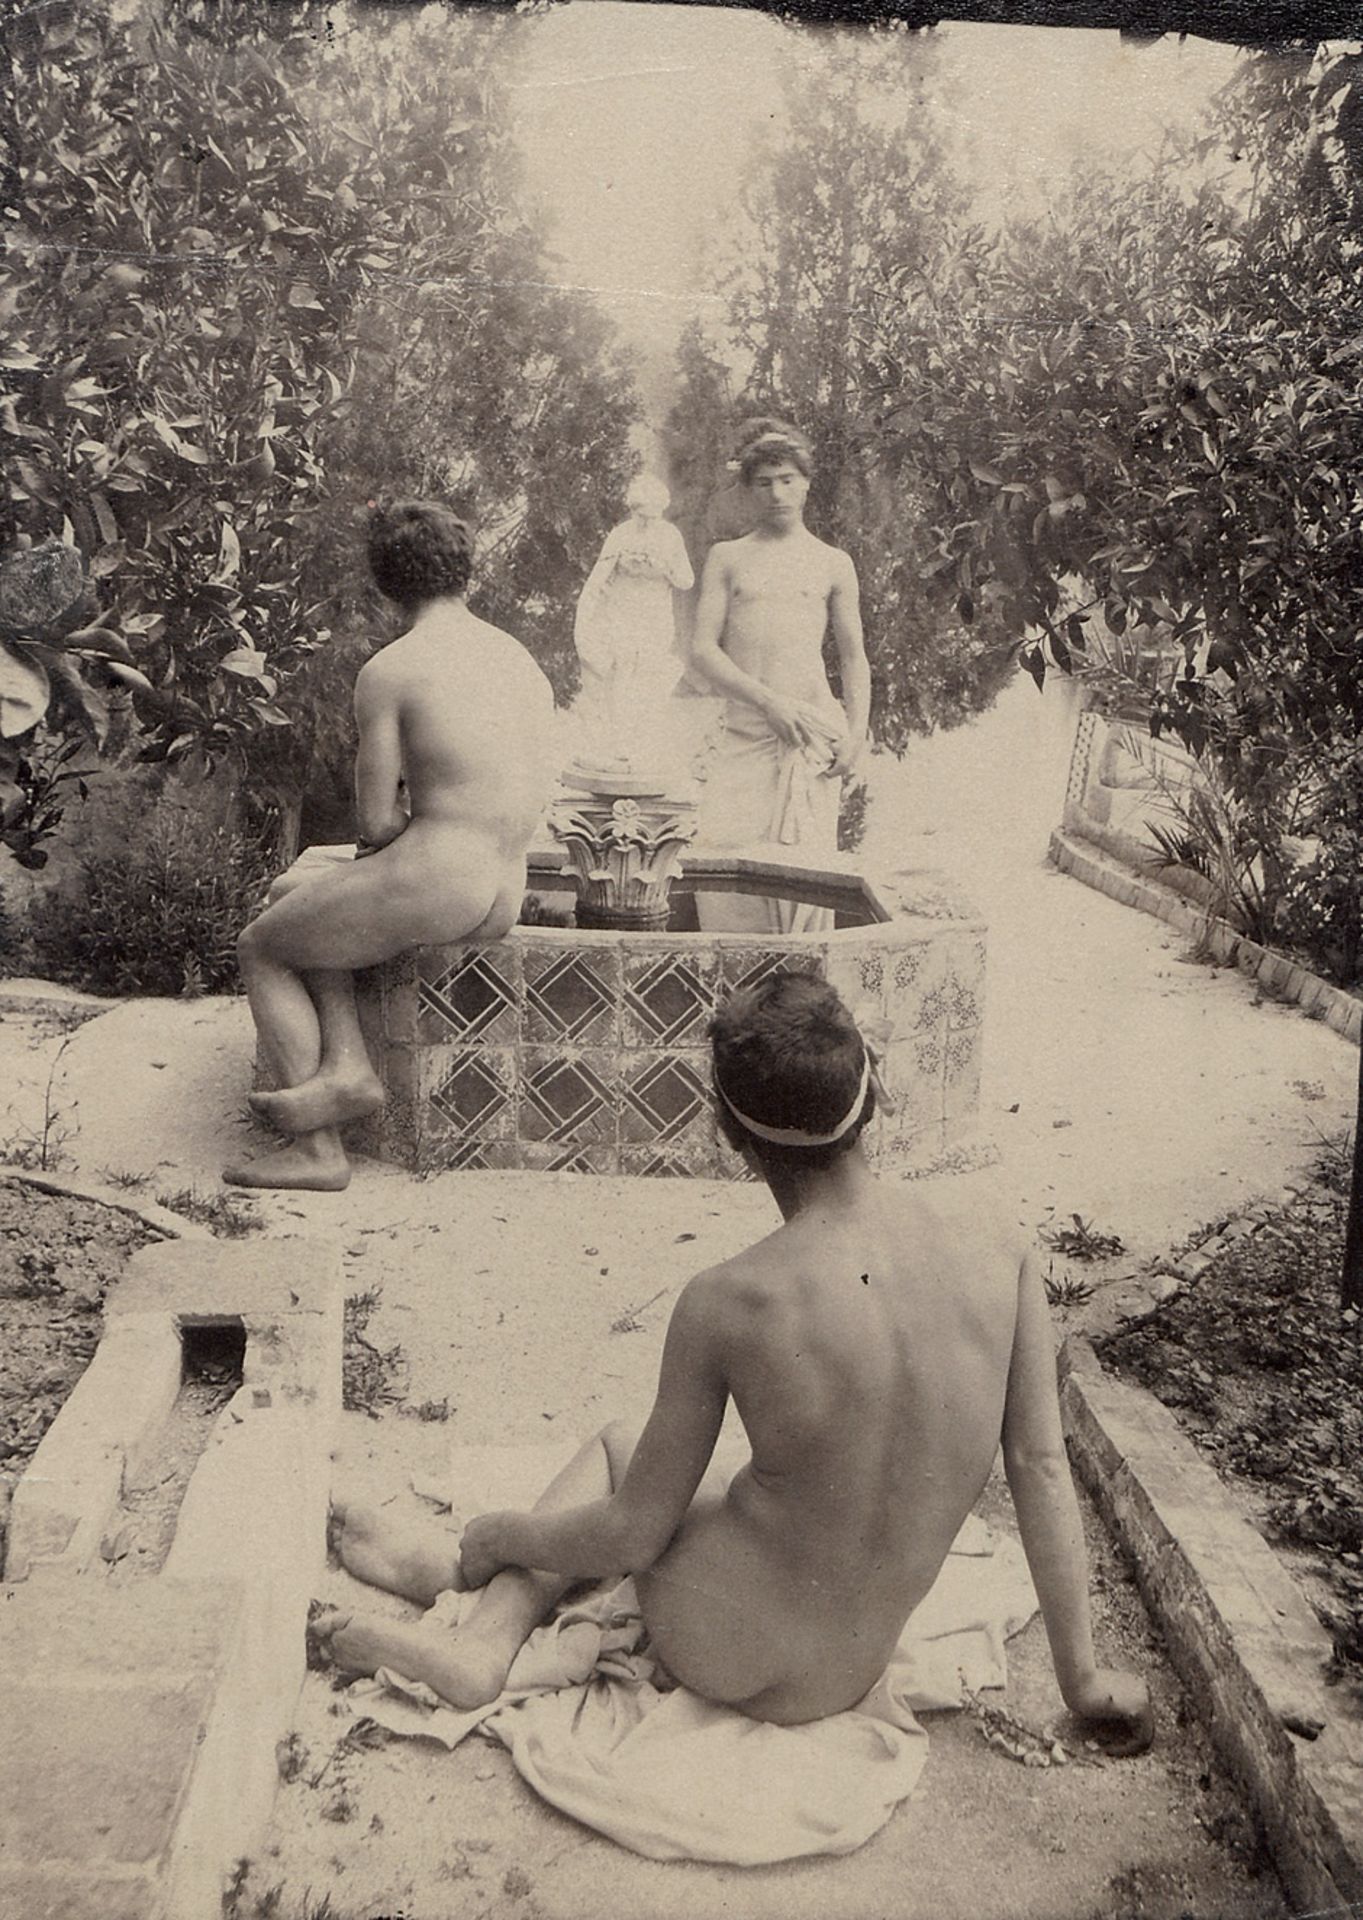 Gloeden, Wilhelm von: Male nudes in gardenMale nudes in garden. 1890s. Albumen print. 17 x 12 cm.